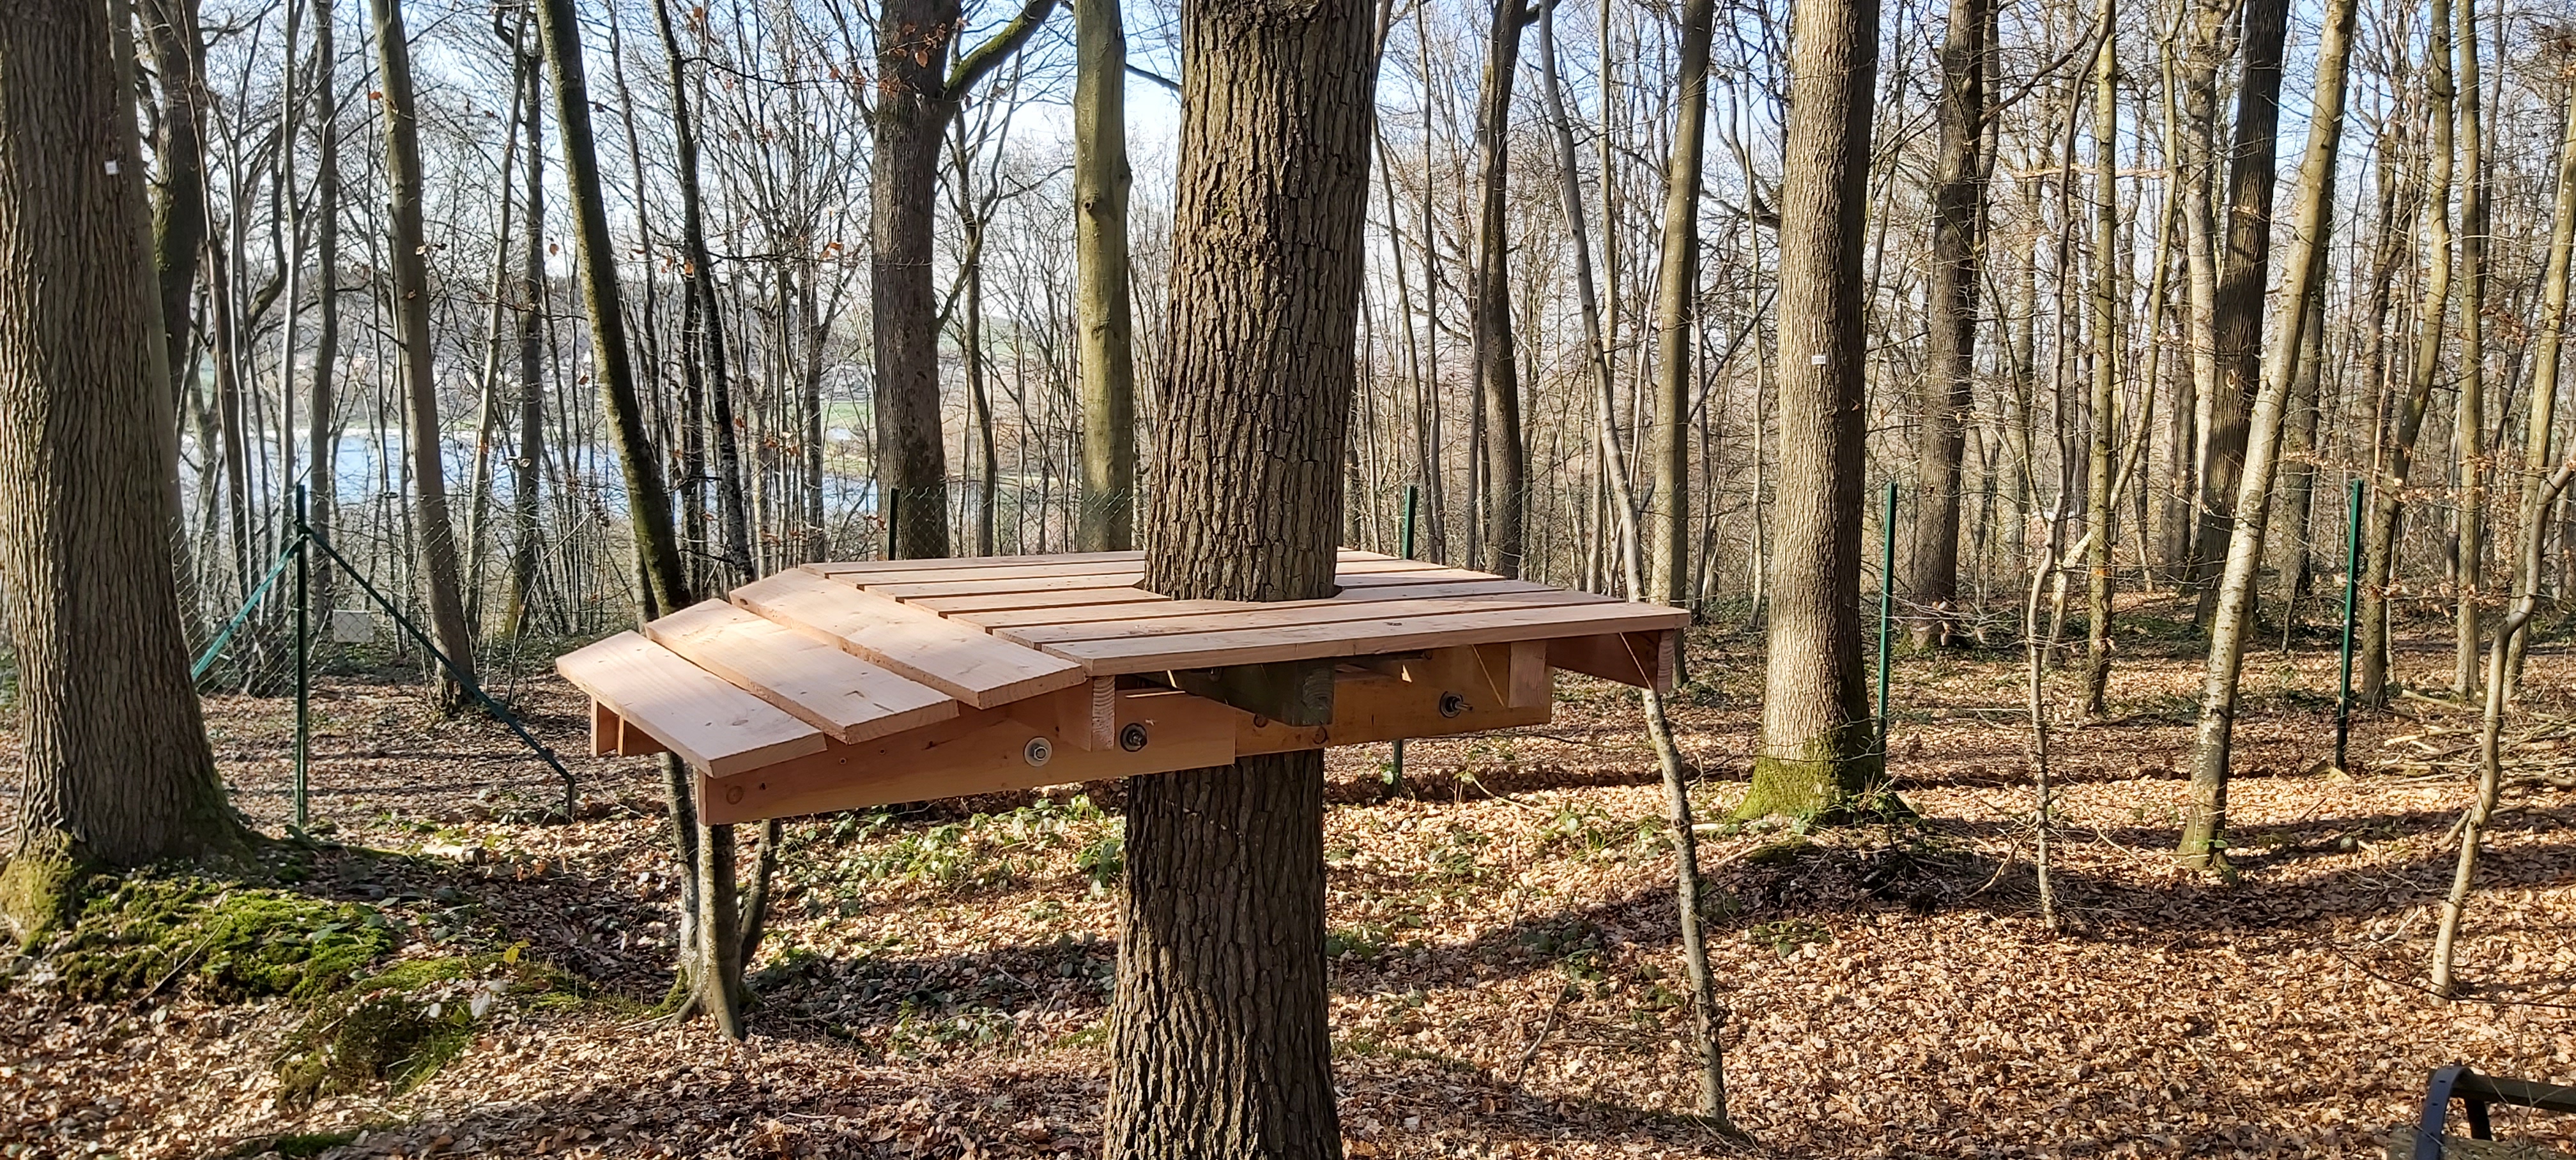 Passerelle en bois sur un arbre